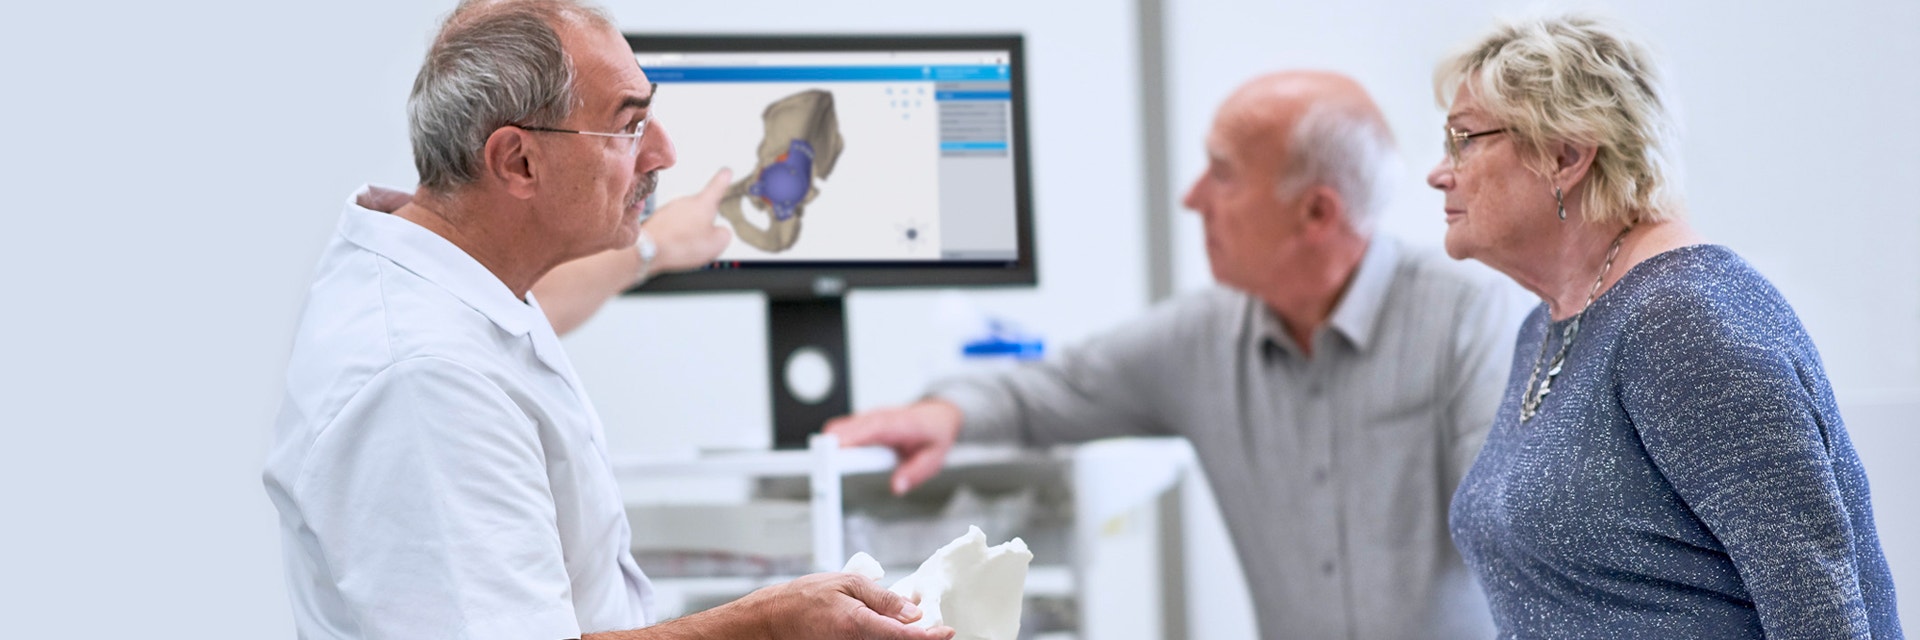 Ein Arzt, der ein 3D-gedrucktes anatomisches Modell hält und auf einen Bildschirm mit dem digitalen Entwurf eines personalisierten Hüftimplantats zeigt, während er mit einem Patienten spricht